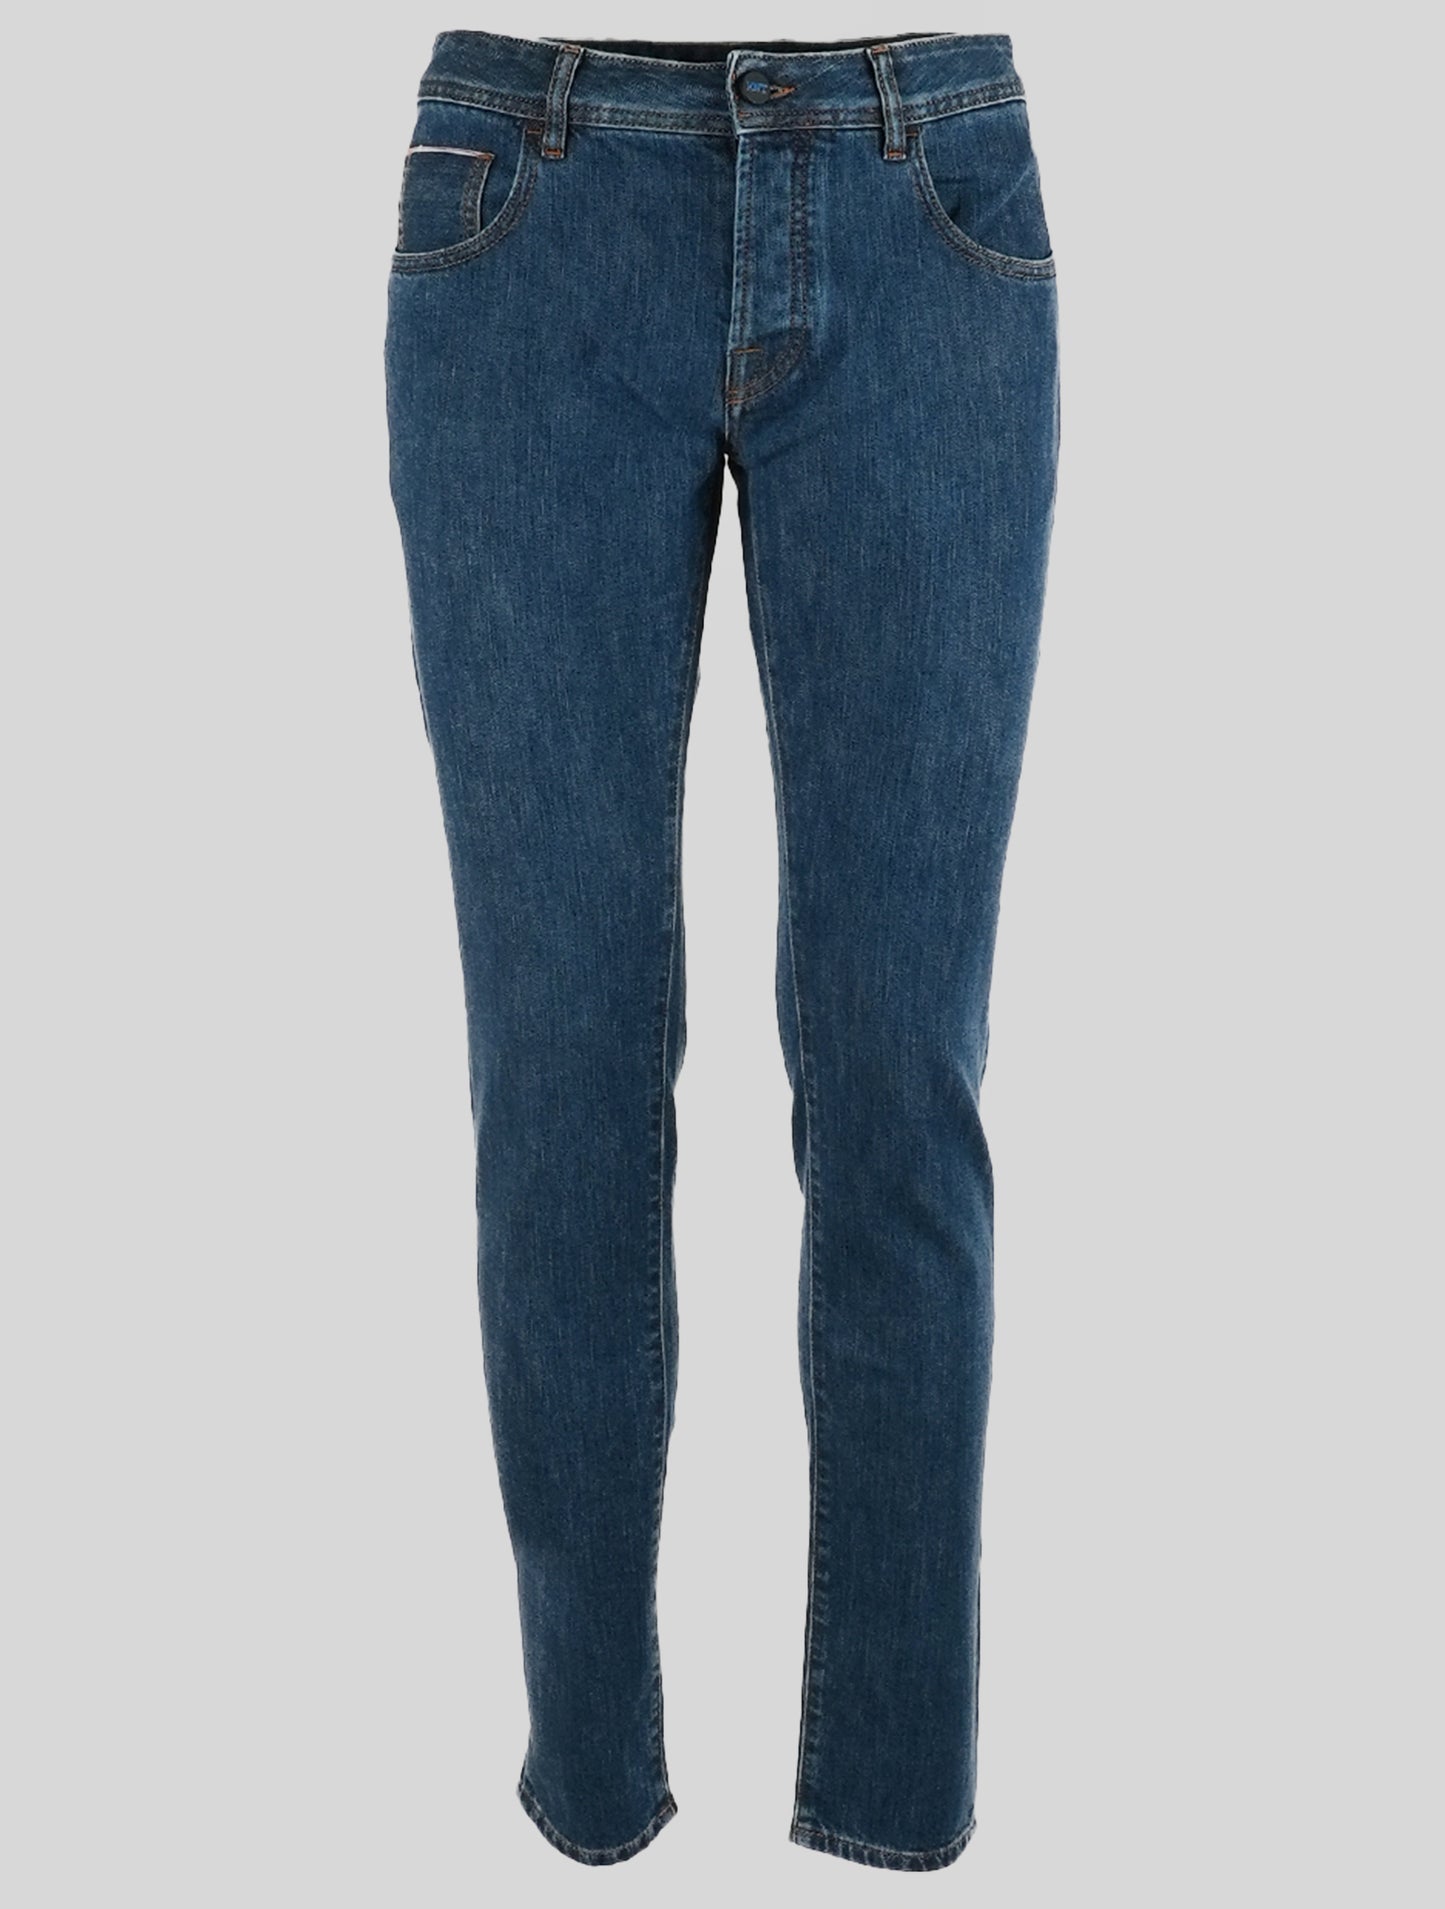 Синие джинсы из хлопка KNT Kiton